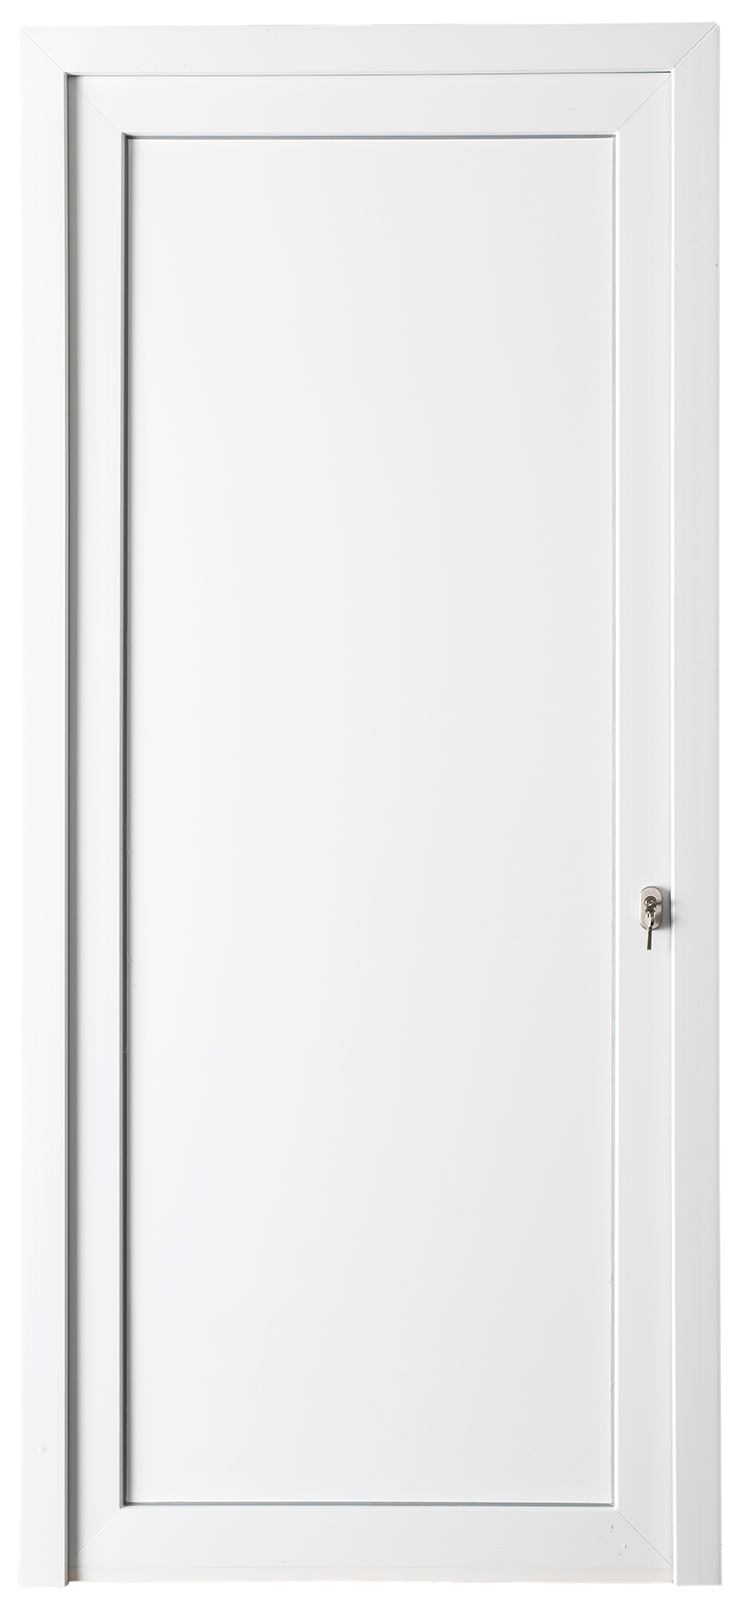 298867 - Porte extérieure PVC blanc - Droite - Pleine - 2180 x 980 mm (de stock)